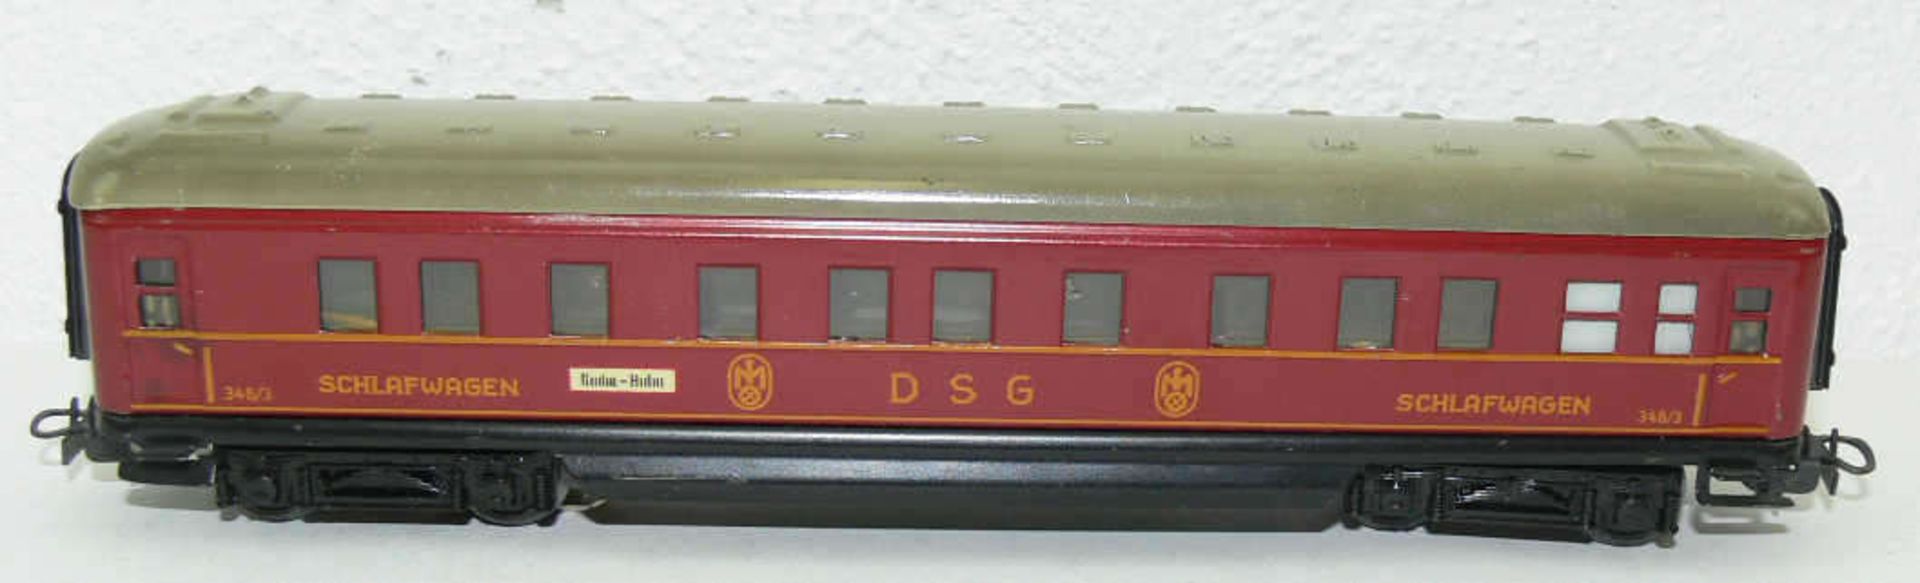 Märklin H0, 346/3, Schürzenwagen Schlafwagen der DSG, 50er Jahre, mit Beleuchtung. Mit leichten